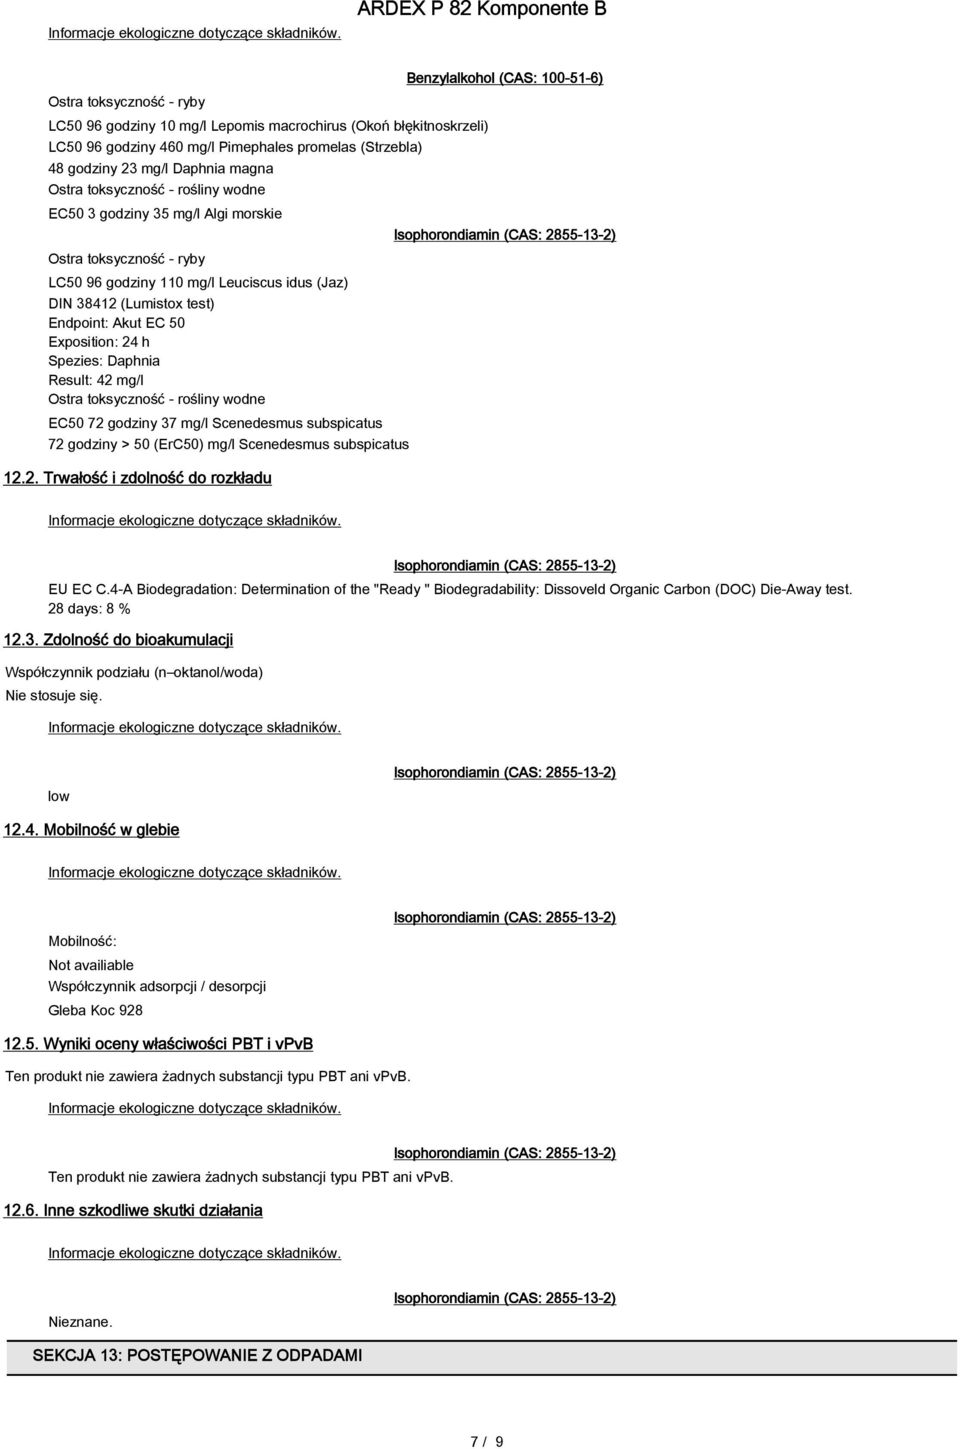 Daphnia Result: 42 mg/l Ostra toksyczność - rośliny wodne EC50 72 godziny 37 mg/l Scenedesmus subspicatus 72 godziny > 50 (ErC50) mg/l Scenedesmus subspicatus 12.2. Trwałość i zdolność do rozkładu Benzylalkohol (CAS: 100-51-6) EU EC C.